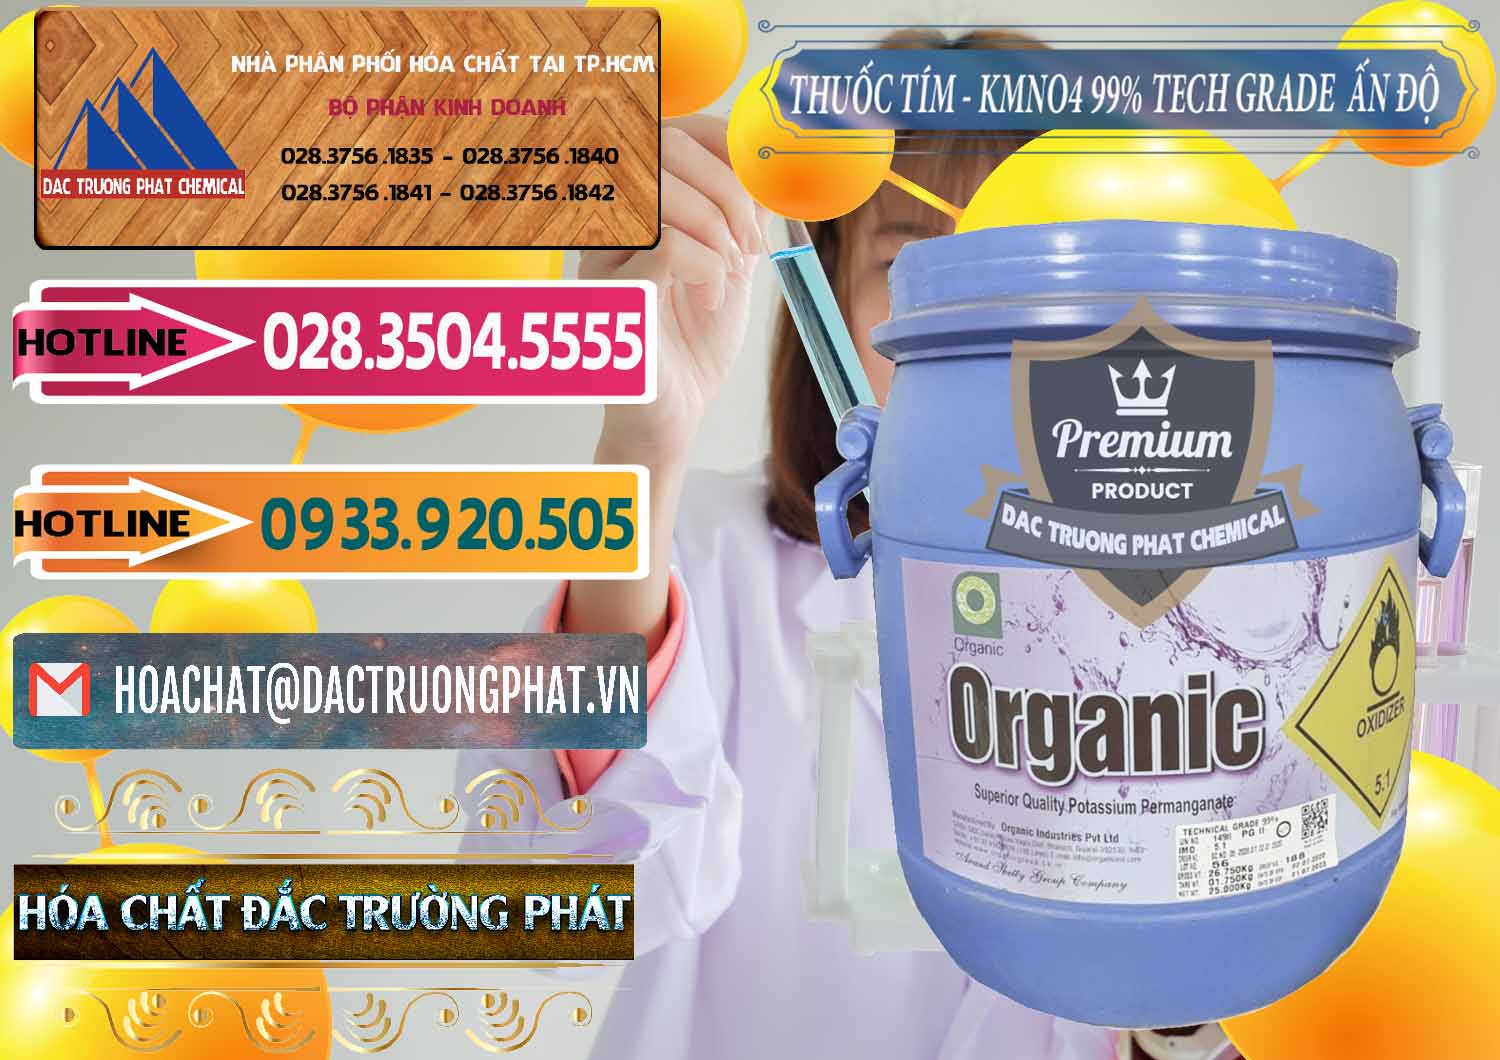 Chuyên cung cấp ( bán ) Thuốc Tím - KMNO4 99% Organic Group Ấn Độ India - 0250 - Cty chuyên bán ( cung cấp ) hóa chất tại TP.HCM - dactruongphat.vn